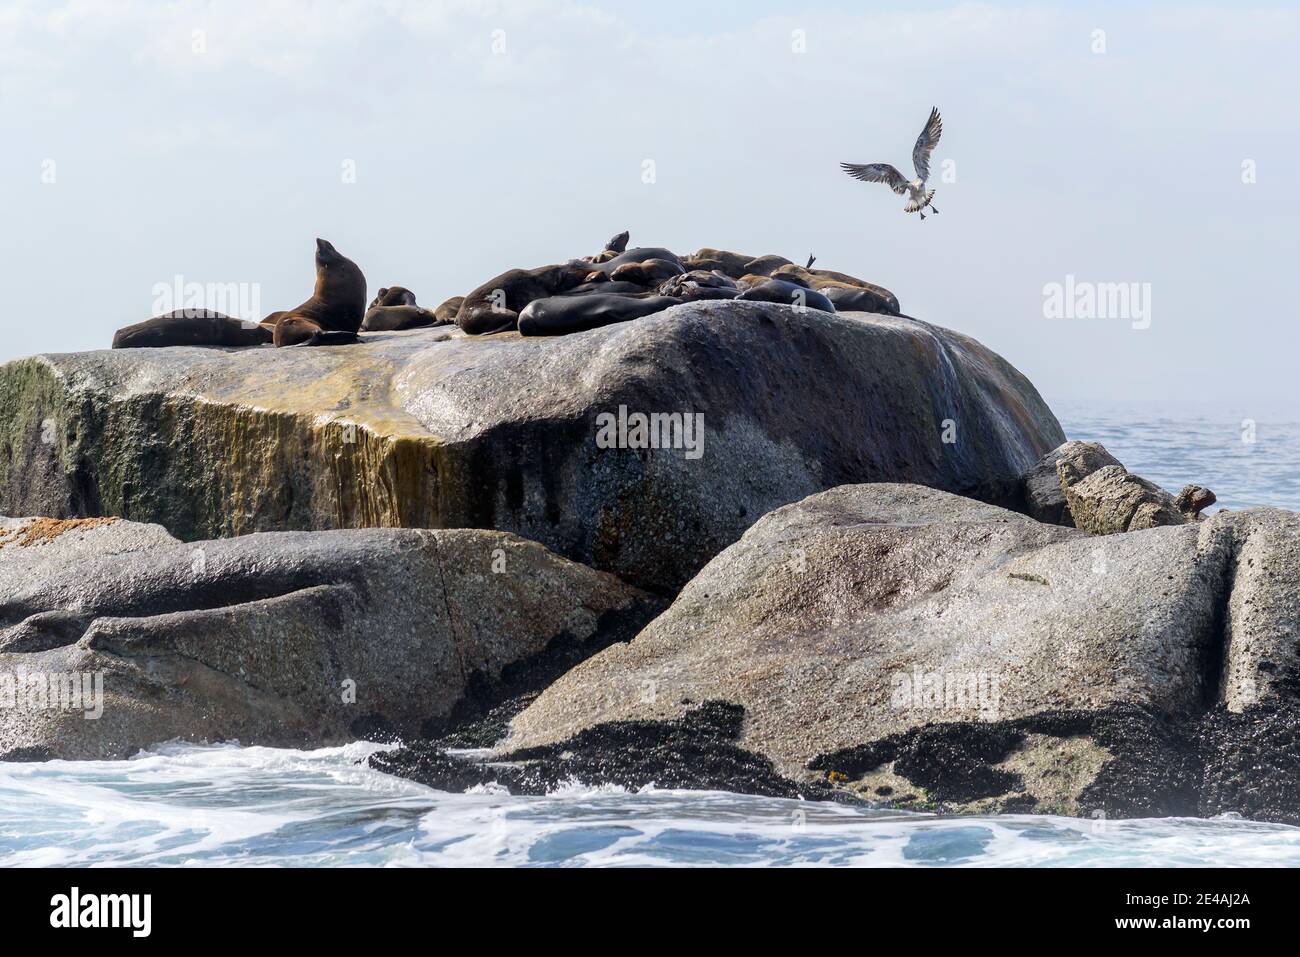 Phoque à fourrure d'Afrique du Sud (Arctocephalus pusillus pusillus), colonie de phoques à fourrure sur les rochers de la mer, False Bay, Simons Town, Afrique du Sud, Océan Indien Banque D'Images